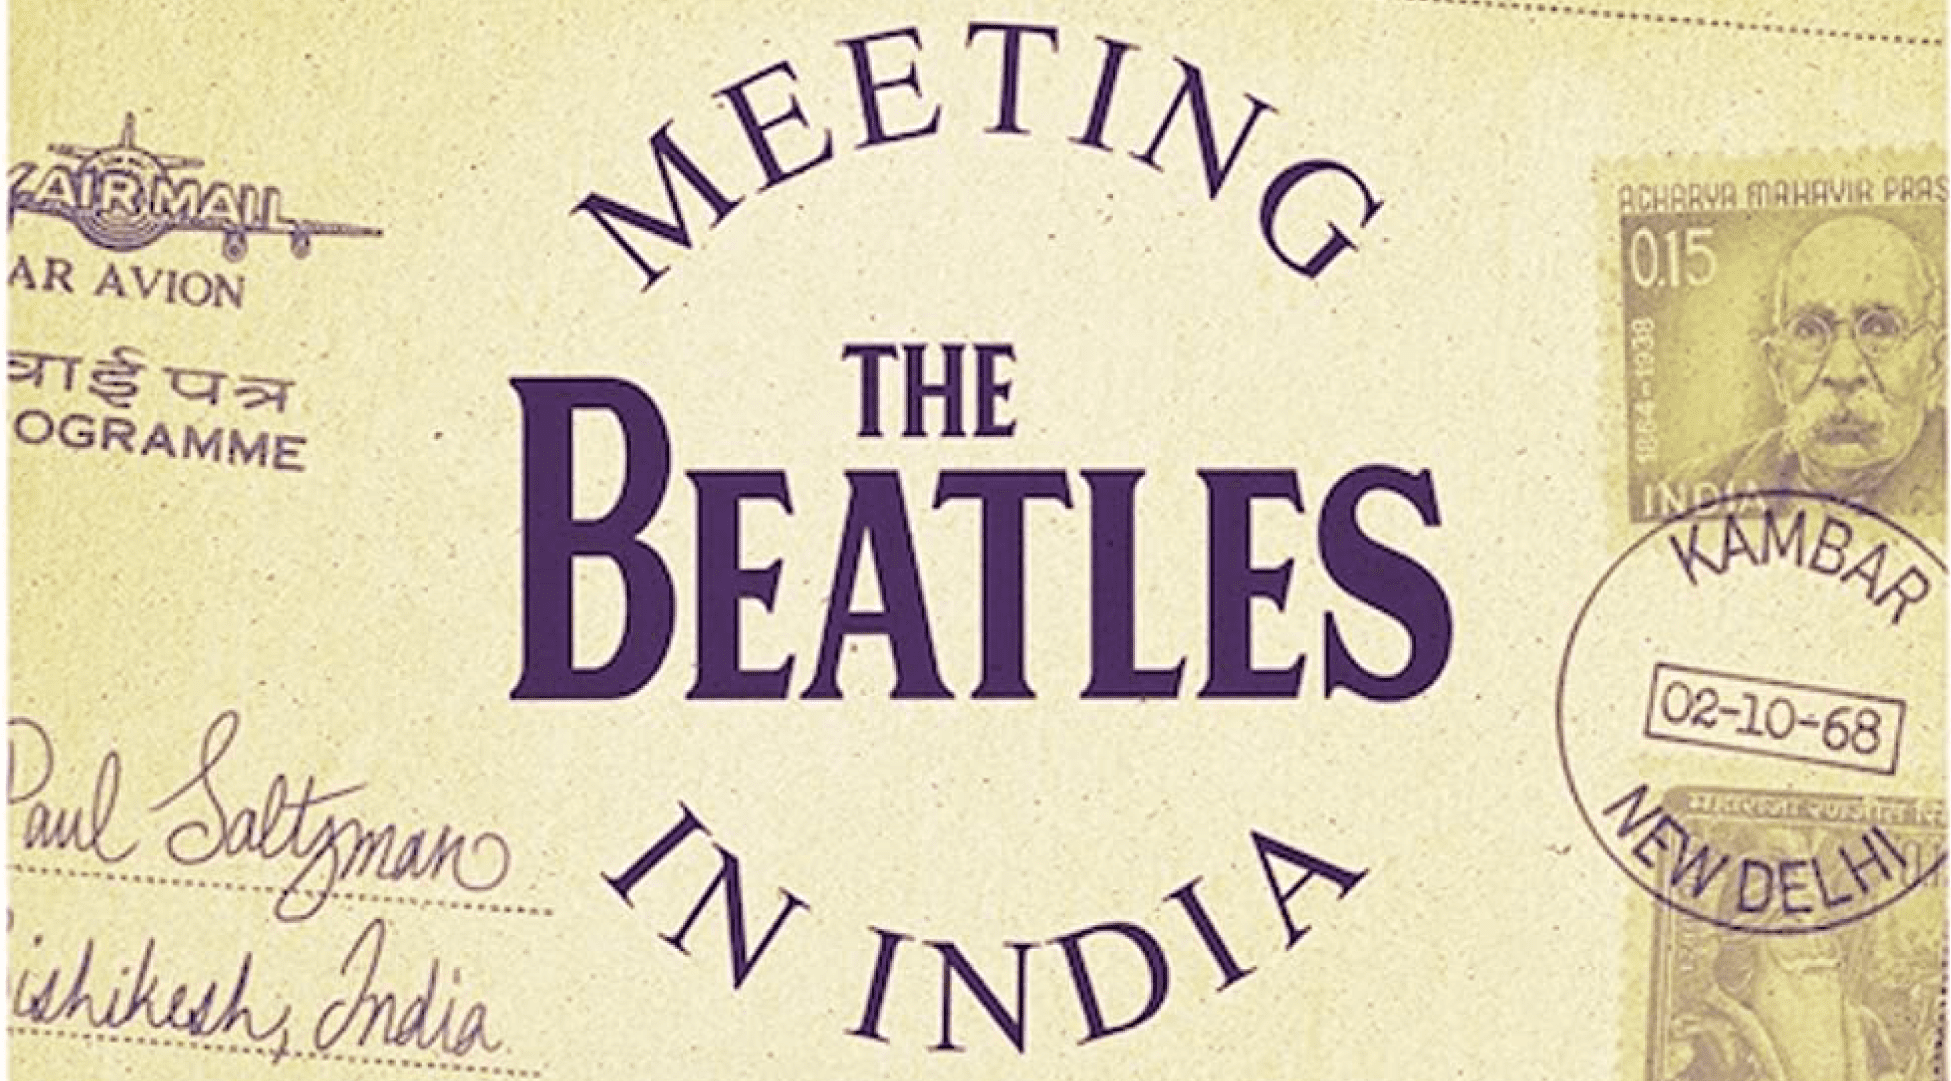 Documental de Los Beatles en Alicante | Fundación Mediterráneo